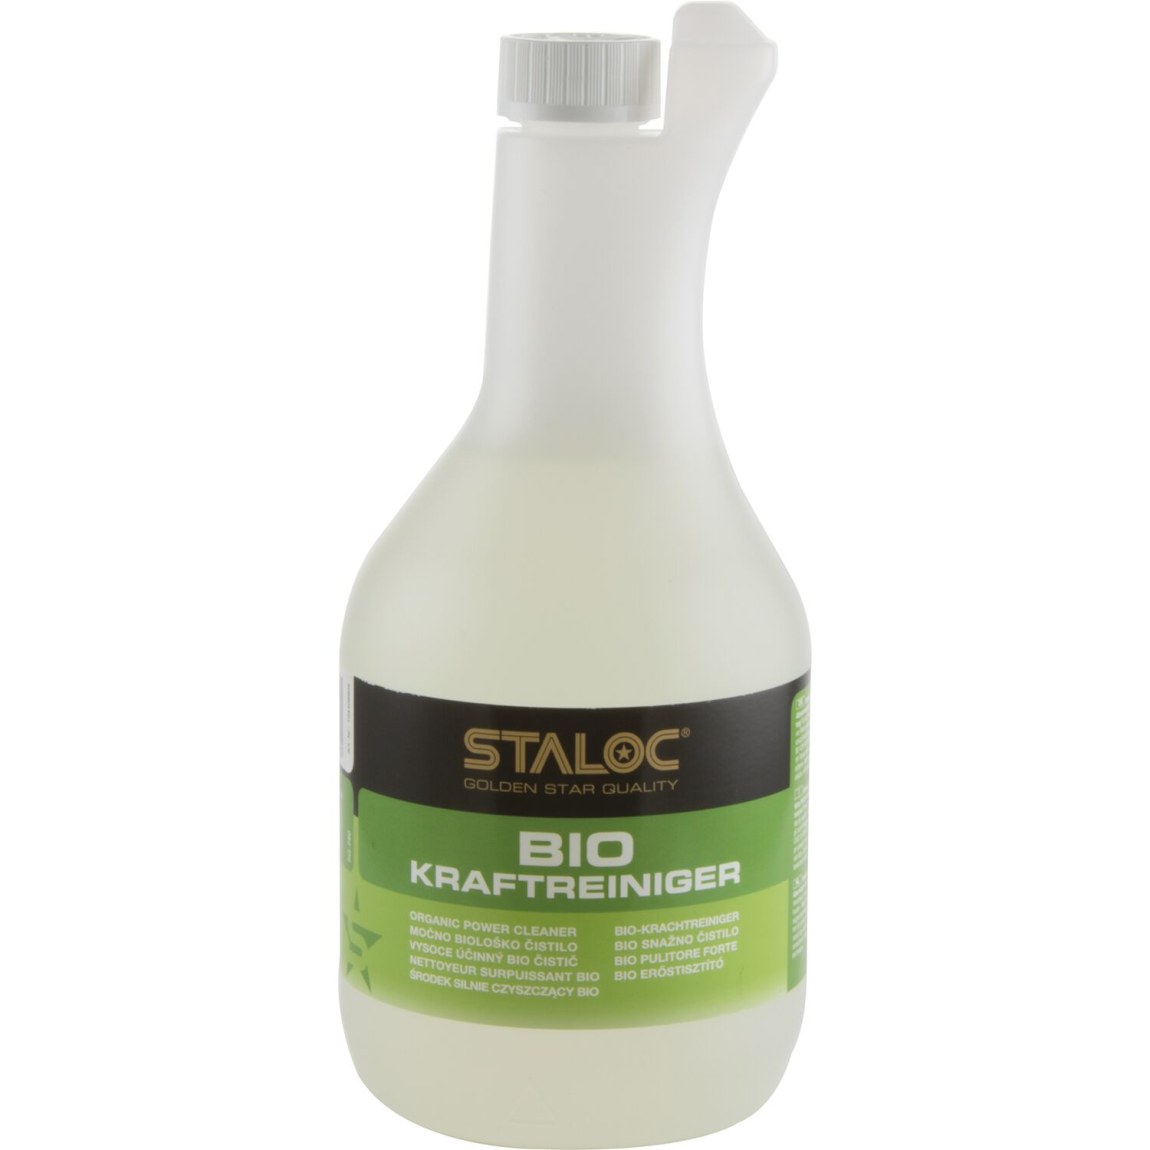 STALOC Bio čistič 1000 ml bez rozprašovače - Železářství Chemicko-technické výrobky Čističe, chladicí, kluzné mazací prostředky